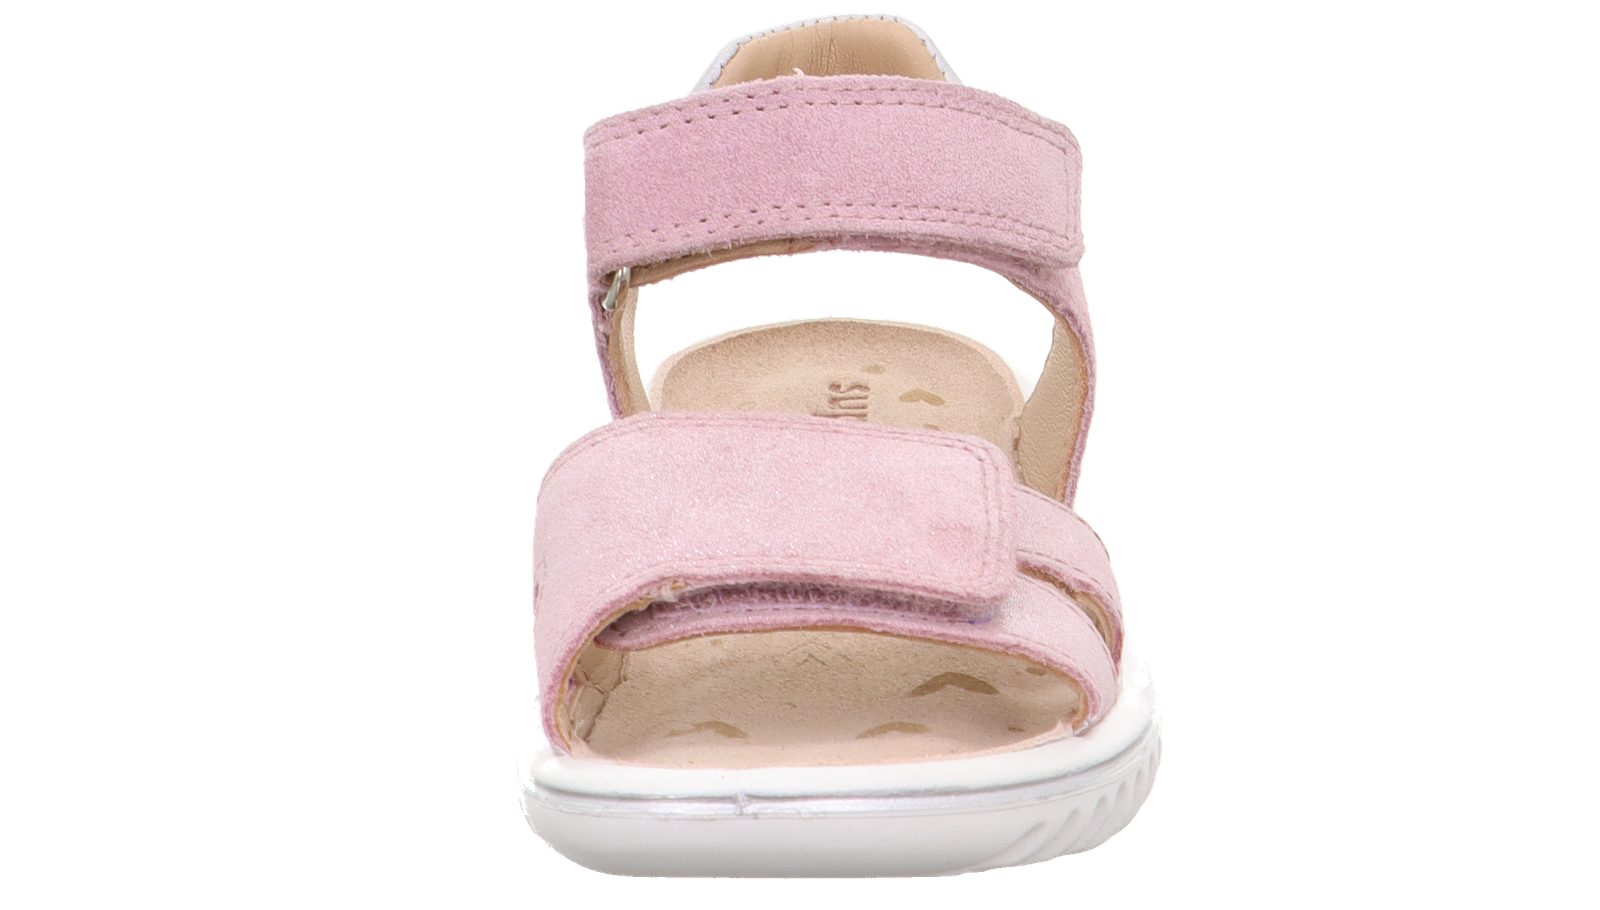 pink SPARKLE Kinder Effeektleder Superfit Sandale 1-609004-5510 Sandale superfit